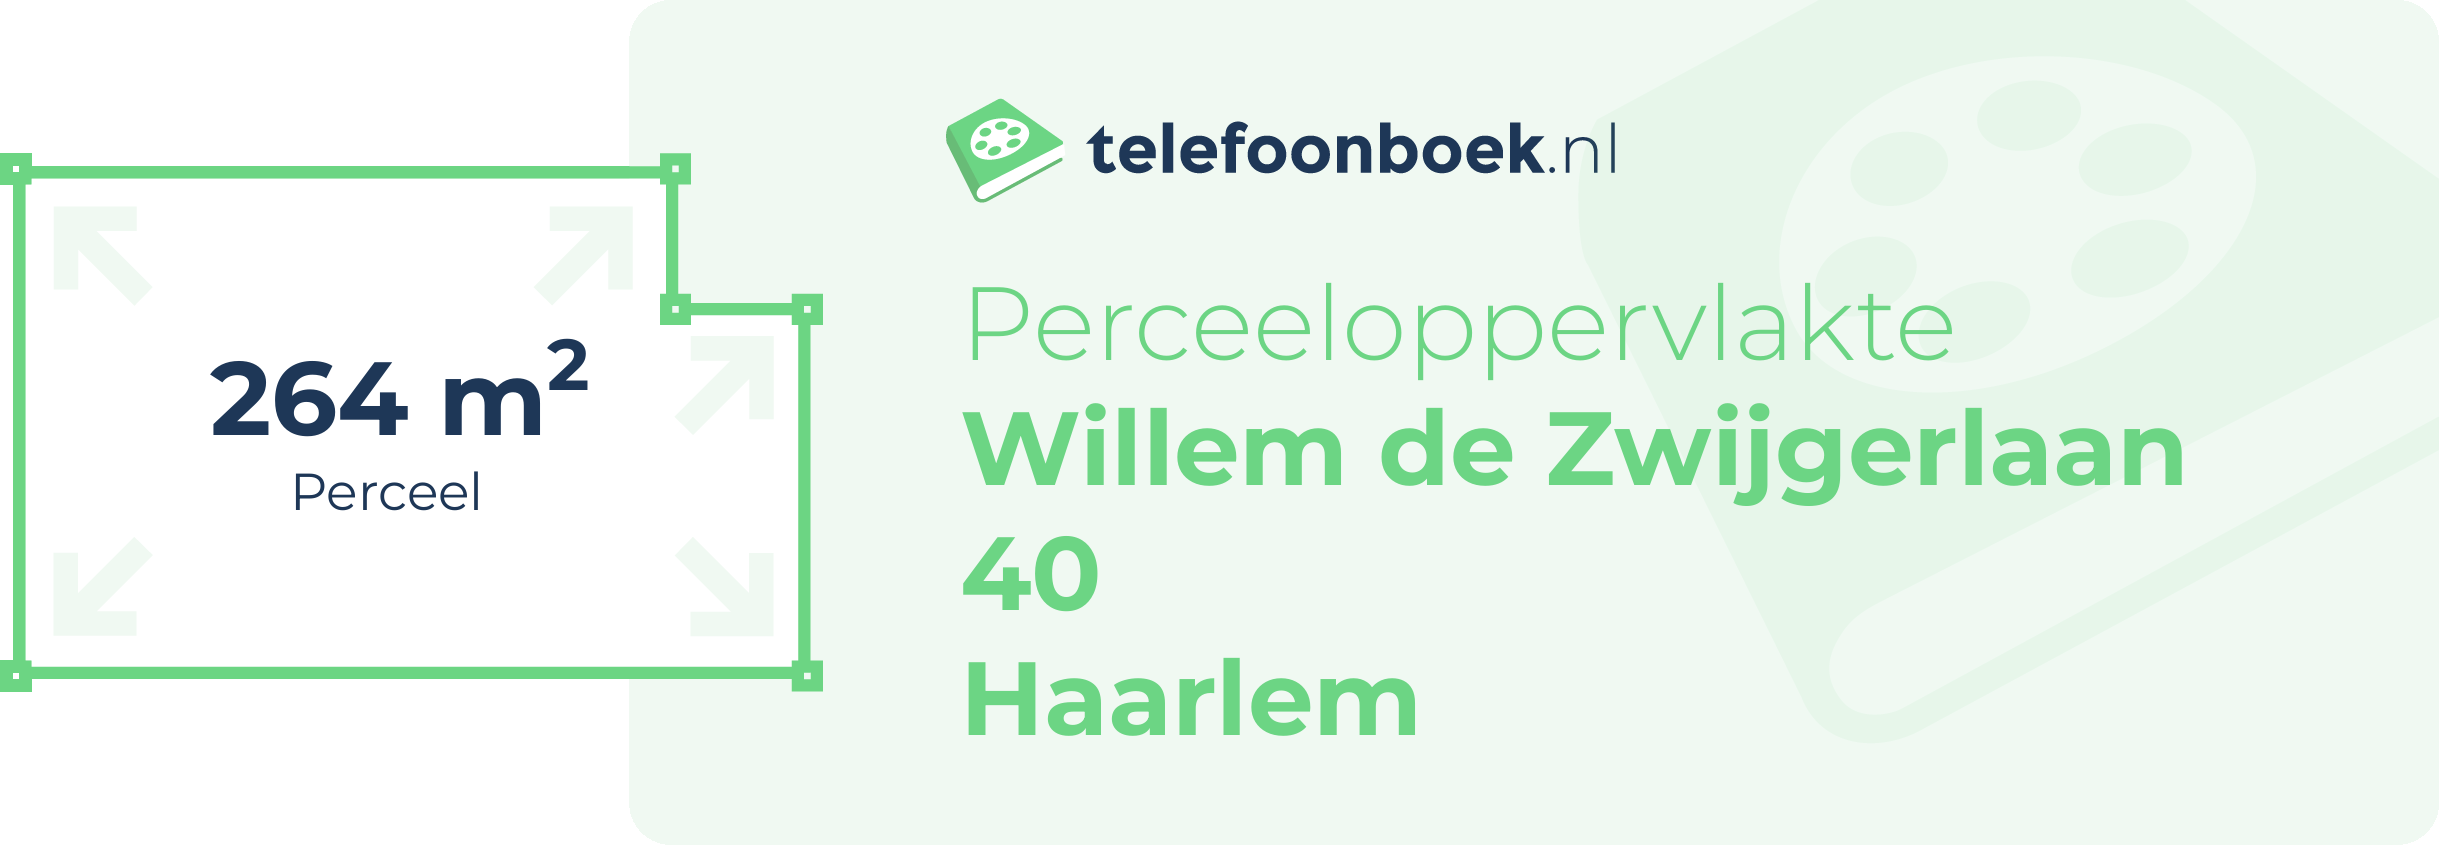 Perceeloppervlakte Willem De Zwijgerlaan 40 Haarlem